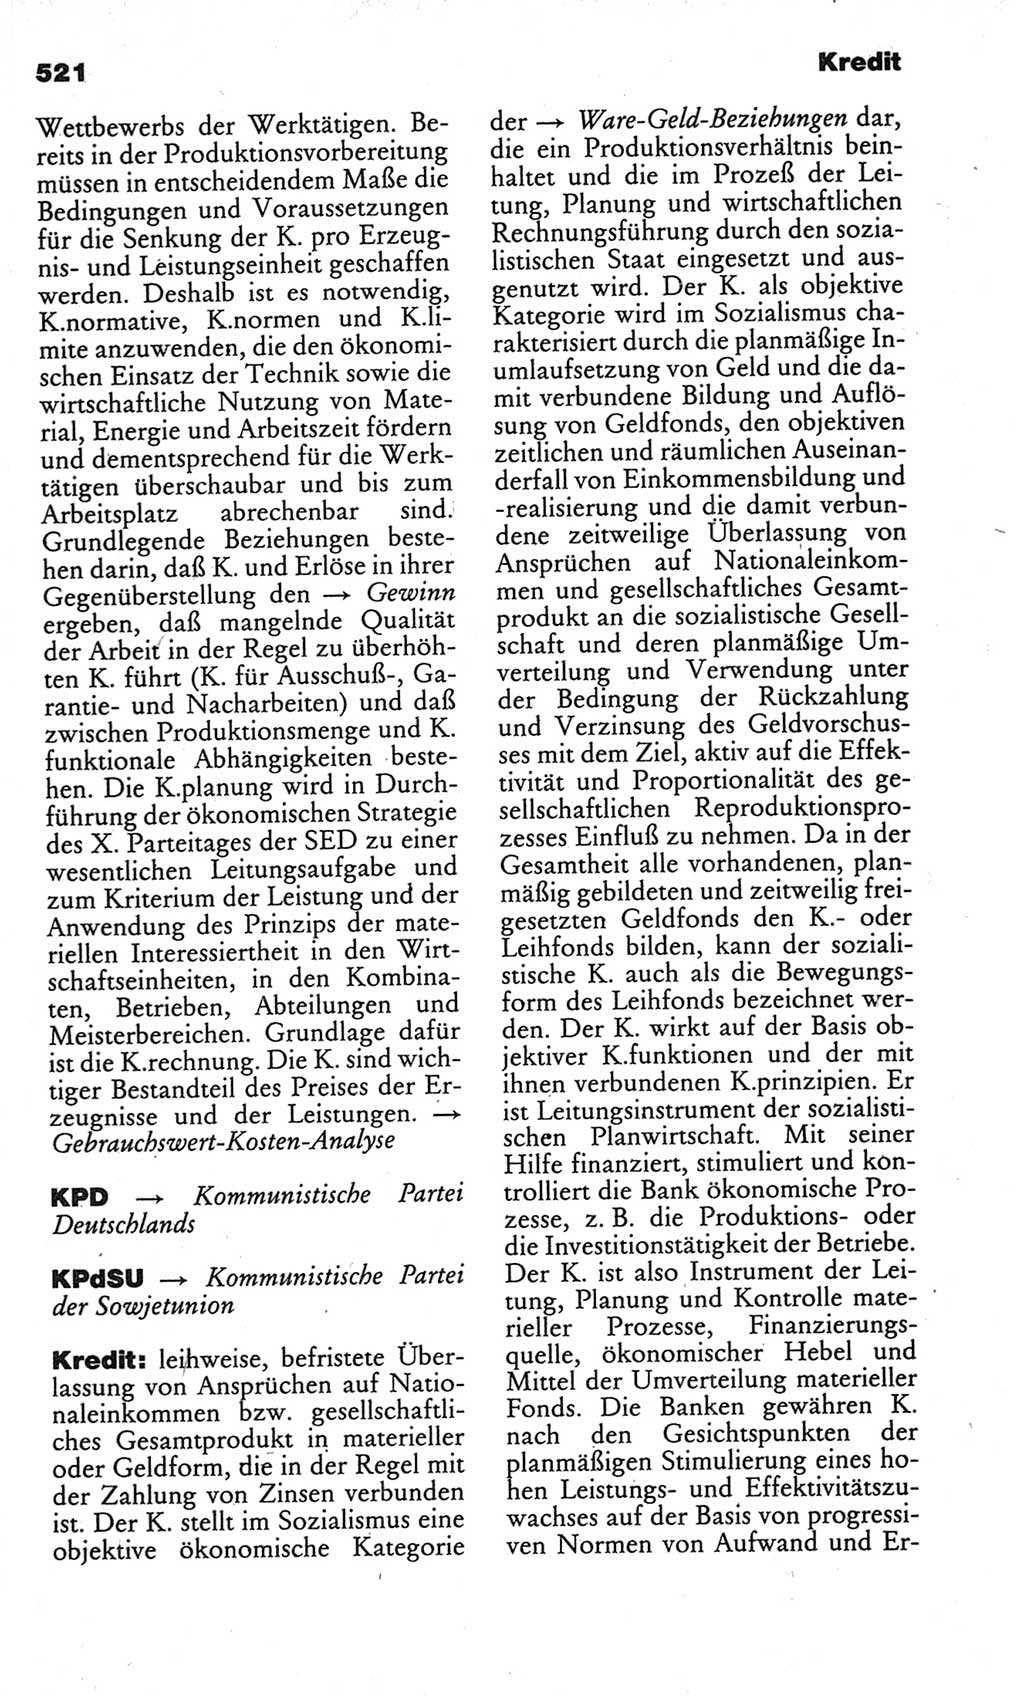 Kleines politisches Wörterbuch [Deutsche Demokratische Republik (DDR)] 1986, Seite 521 (Kl. pol. Wb. DDR 1986, S. 521)